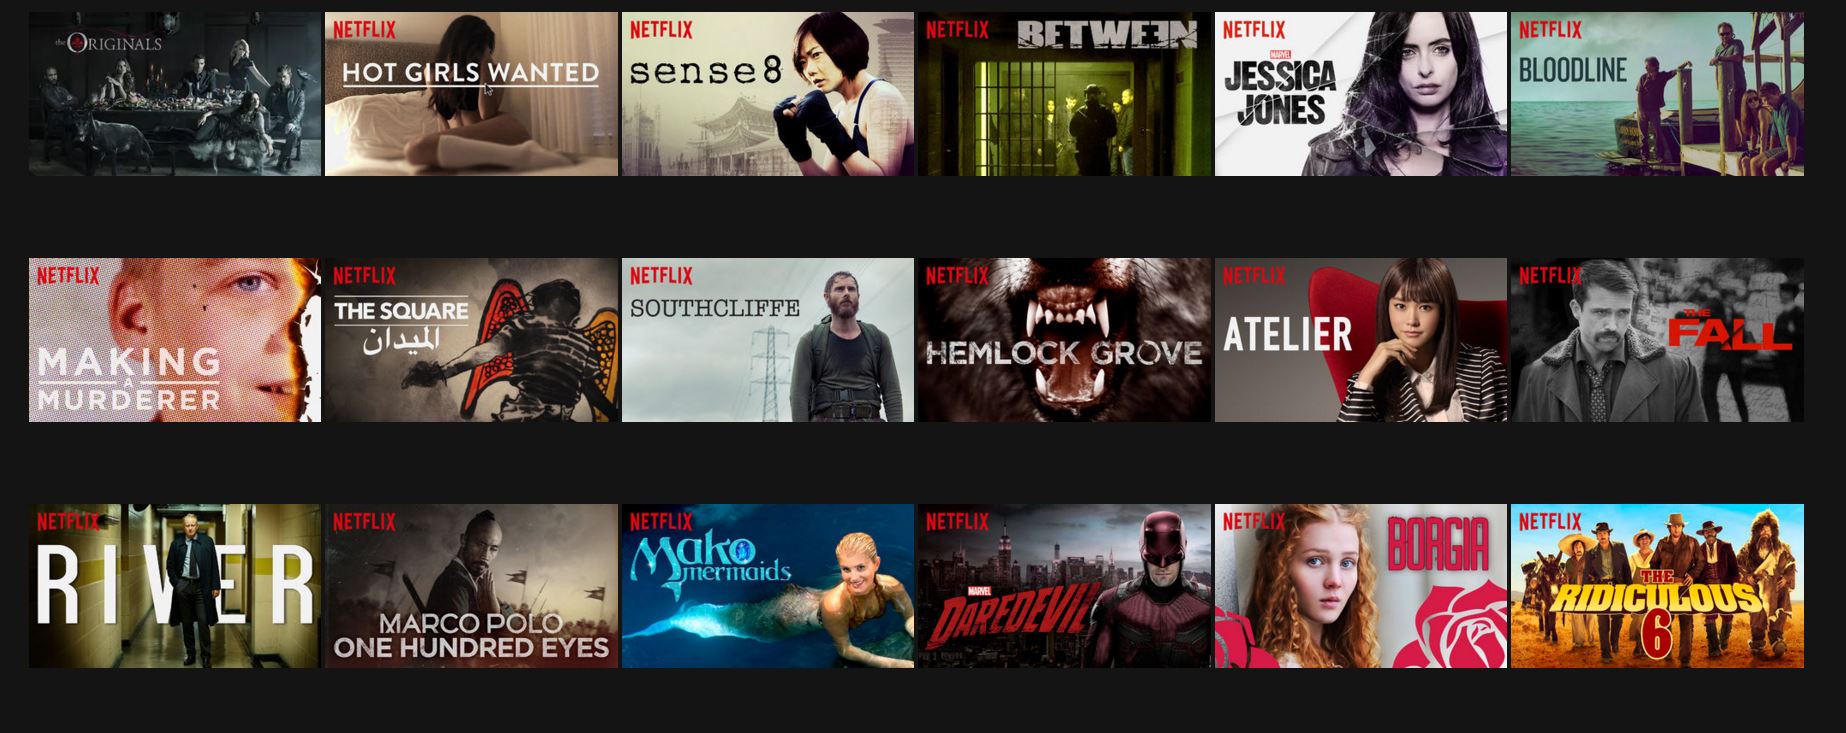 Netflix tendrá el doble de series originales en 2017 - HobbyConsolas  Entretenimiento